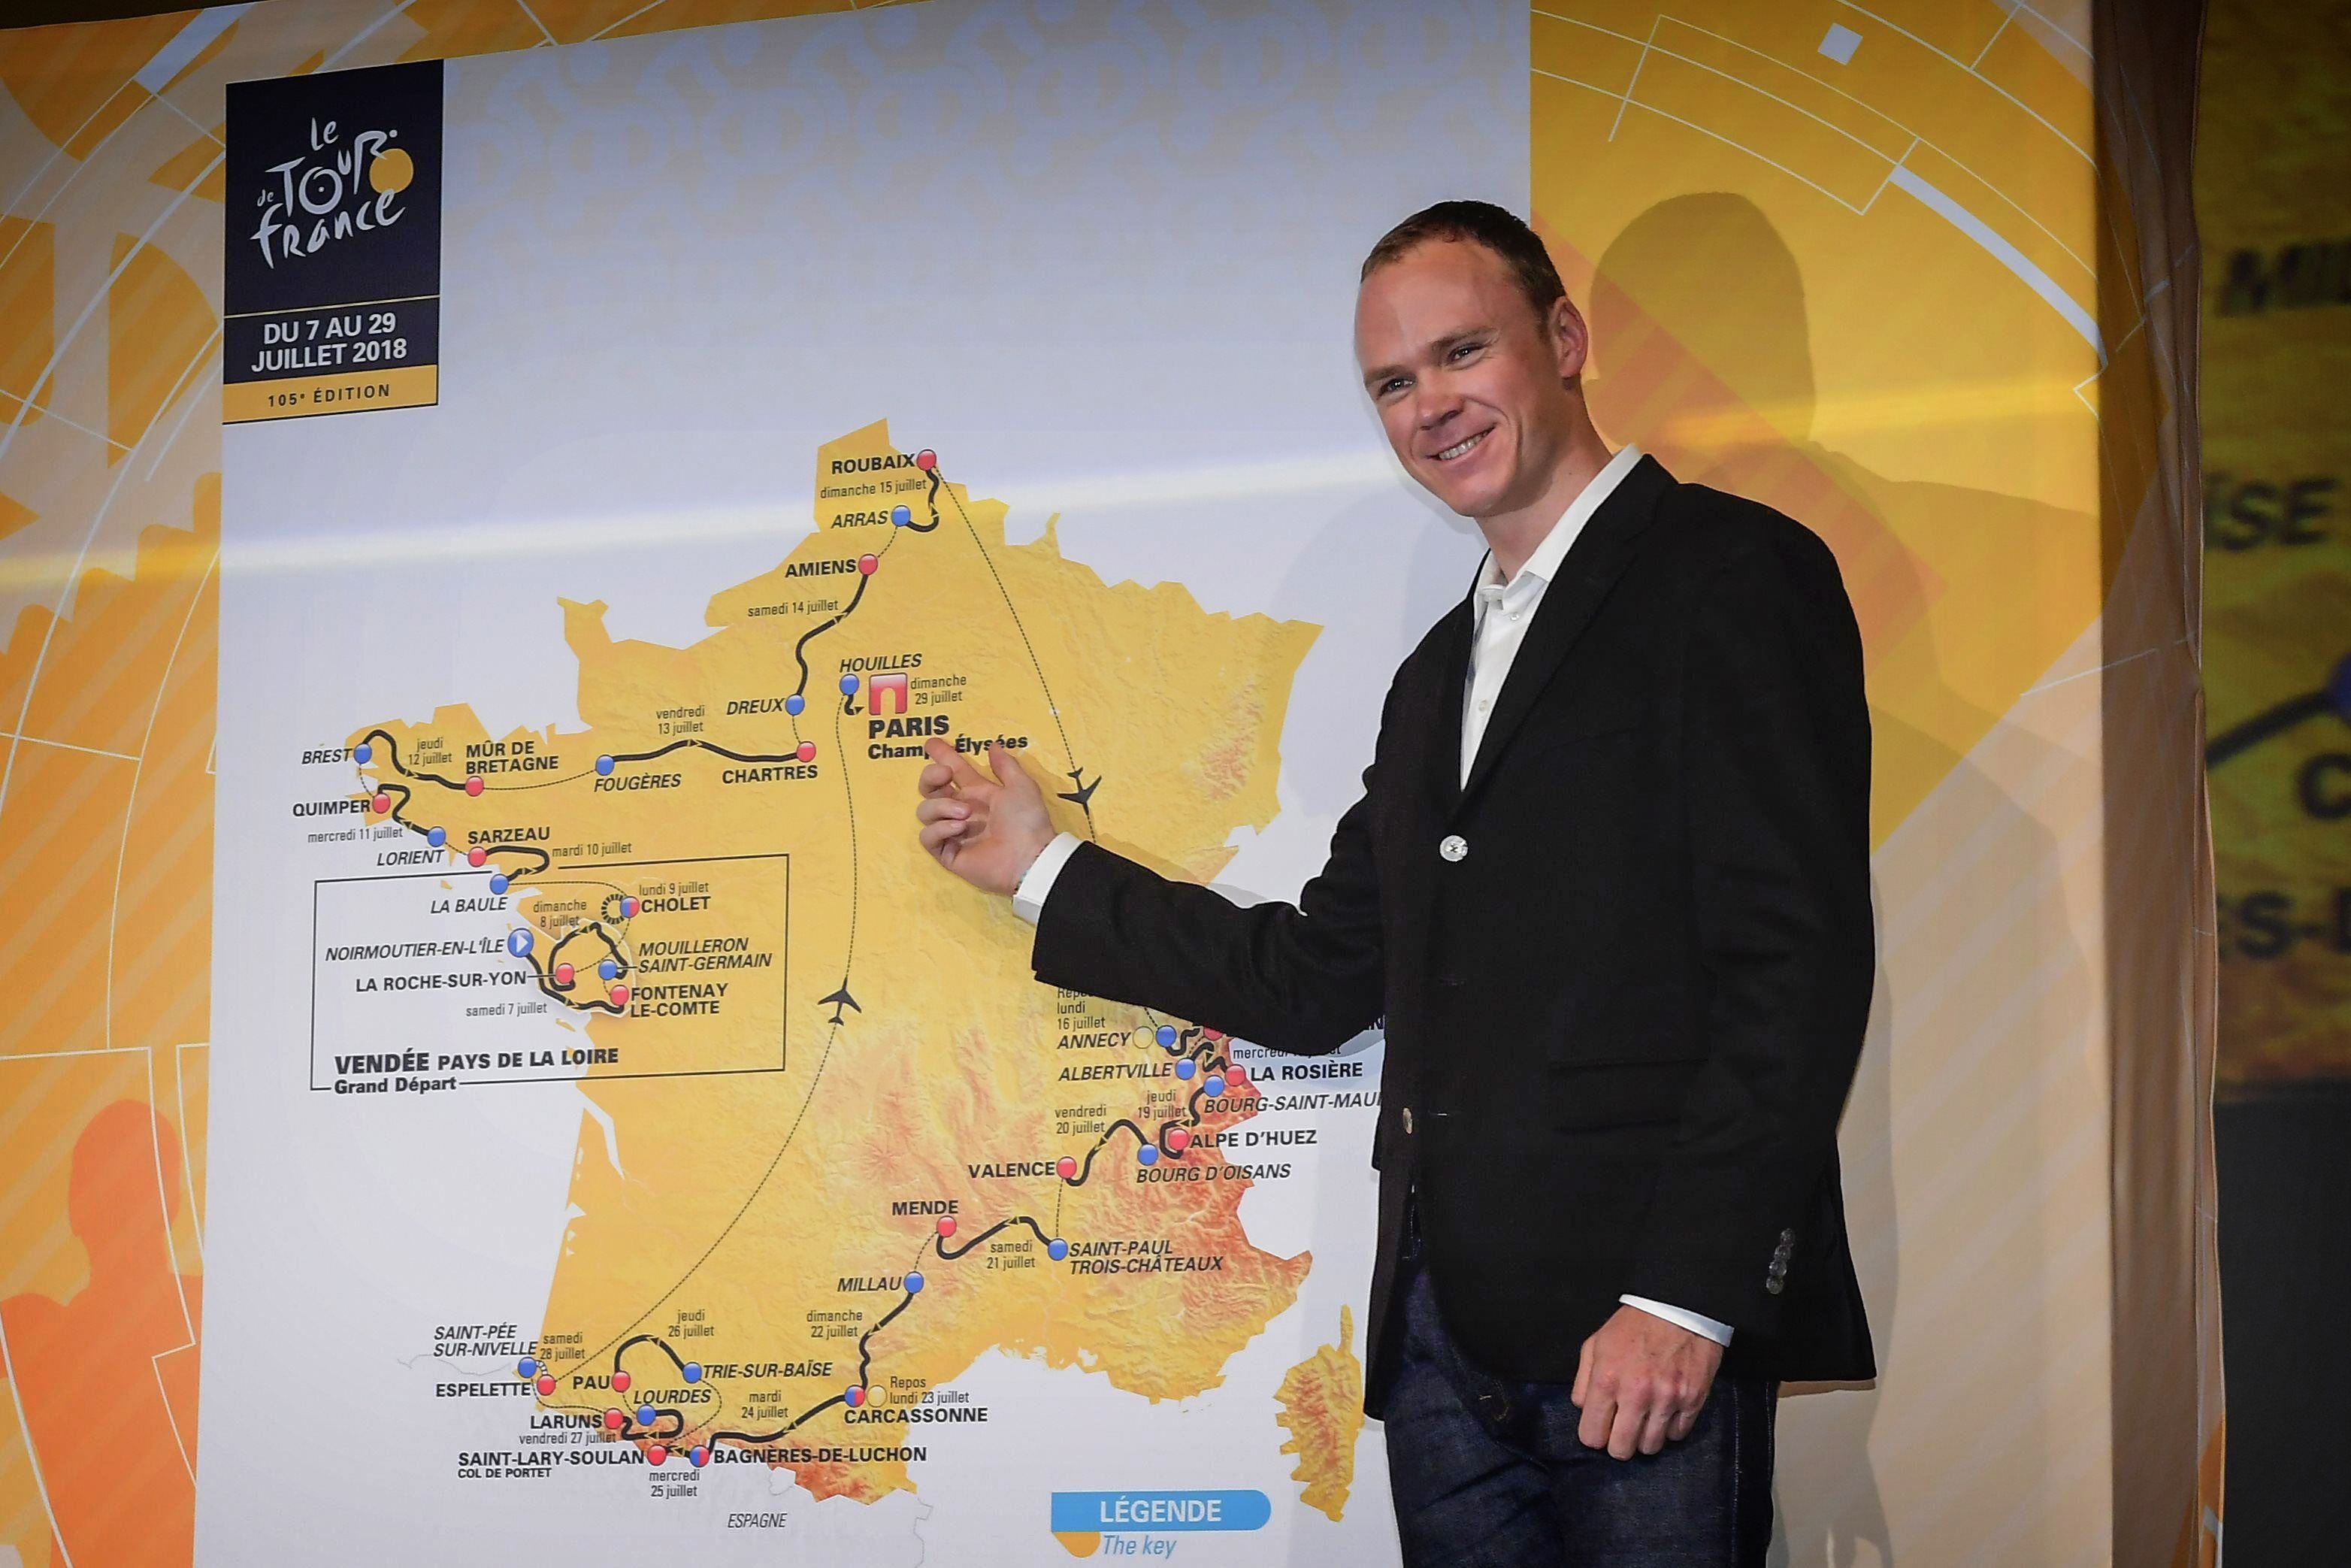 Tour de France 2018 presentation